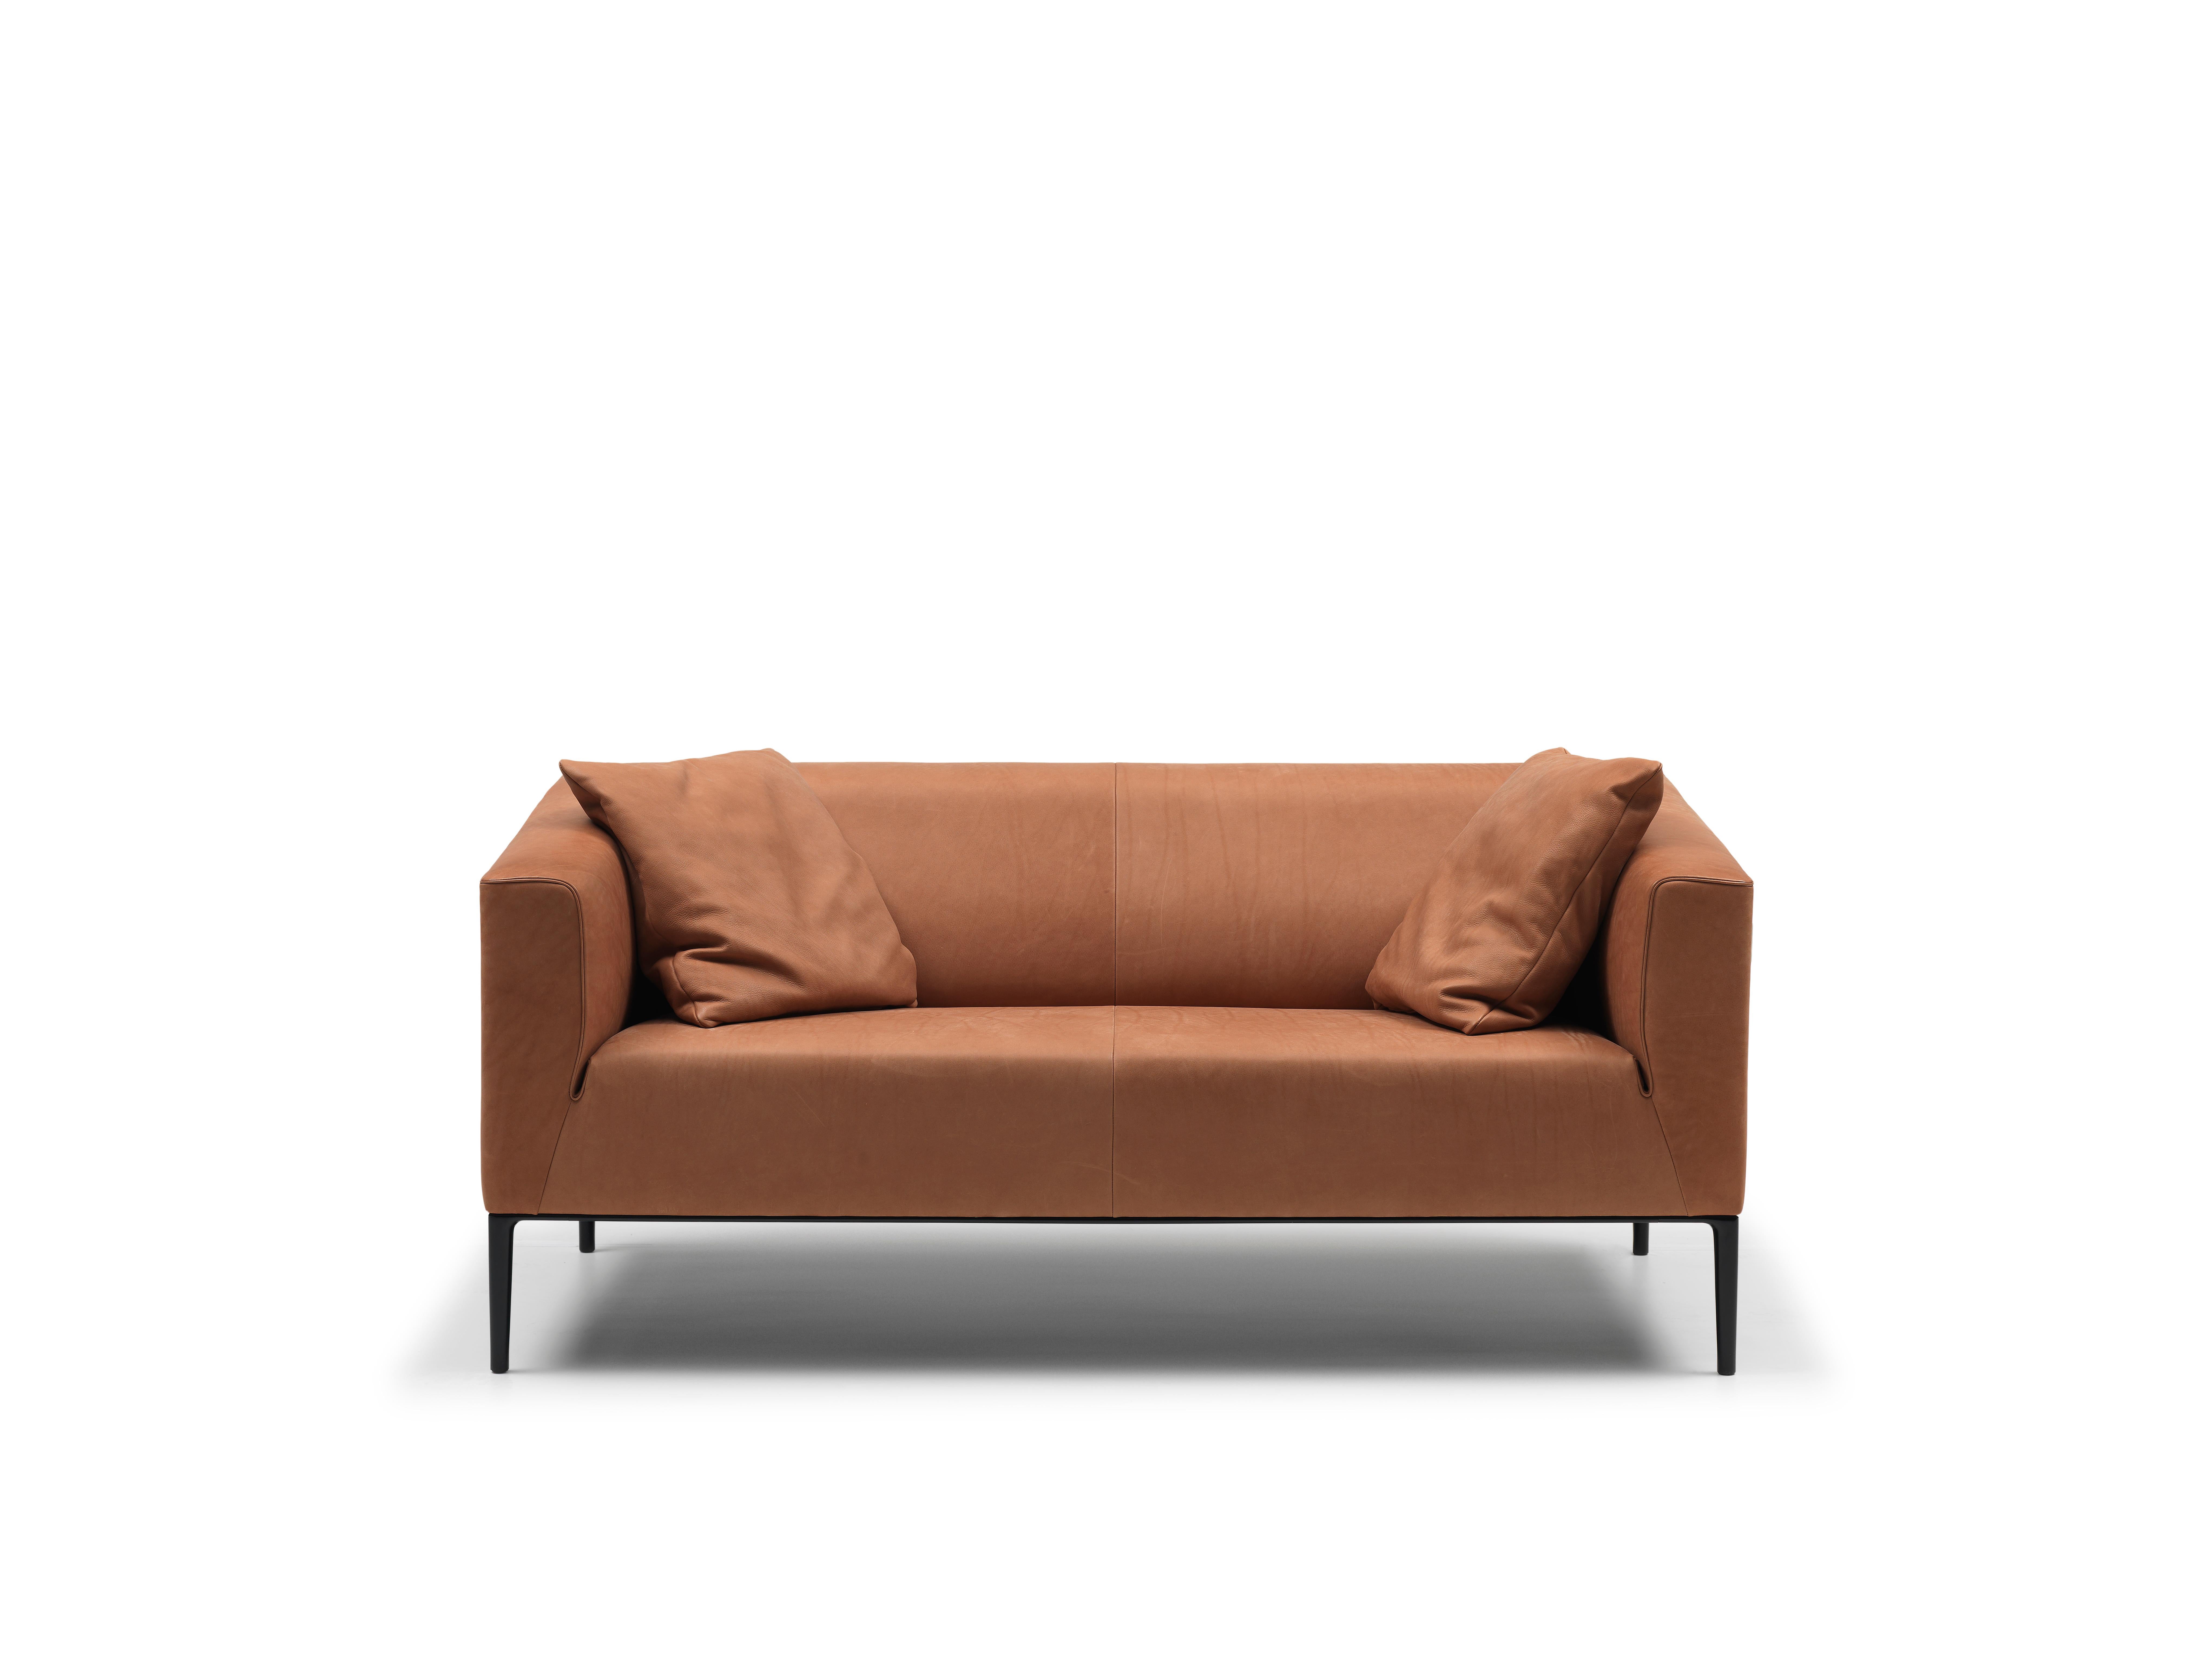 Sofa DS-161 von De Sede
Abmessungen: T 54 x B 157 x H 72 cm
MATERIAL: Aluminium, Leder

Die Preise können sich je nach den gewählten Materialien und der Größe ändern. 

Eine geradlinige Außenkontur und ein runder Innenraum - die elegante